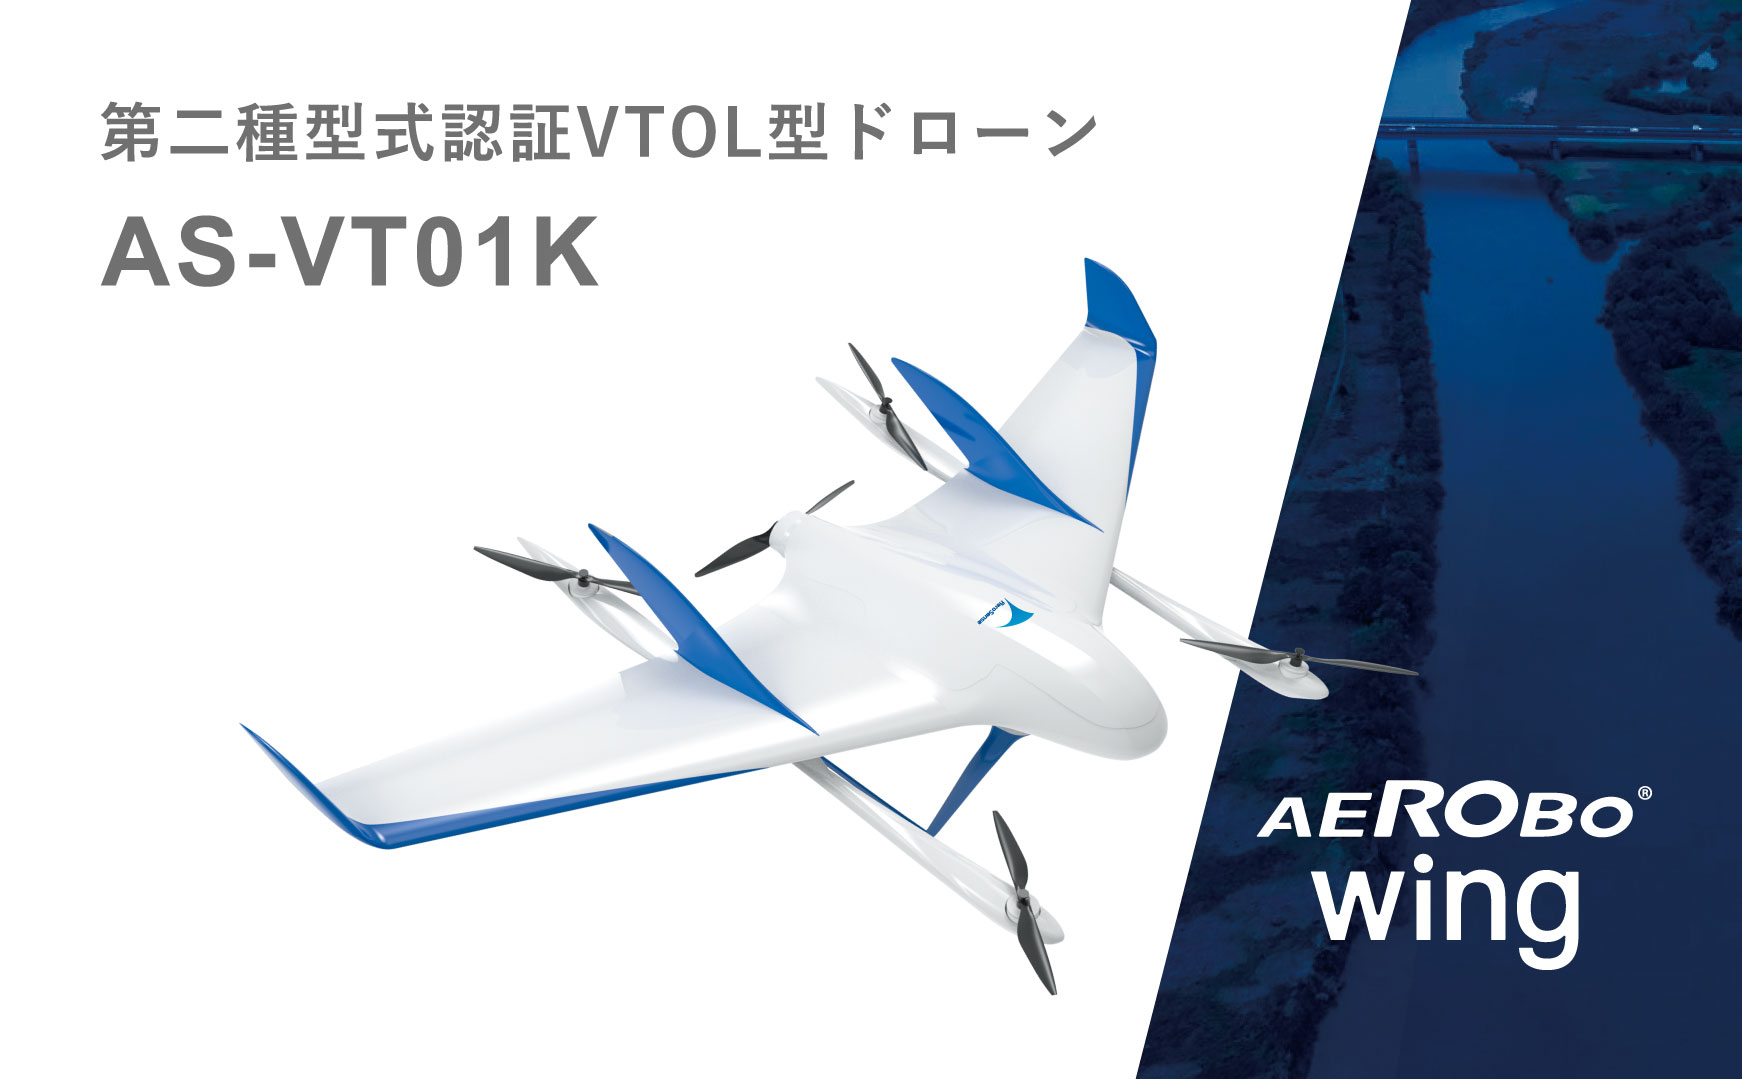 「エアロボウイング」が垂直離着陸型固定翼（VTOL）機として国内初となる第二種型式認証を取得